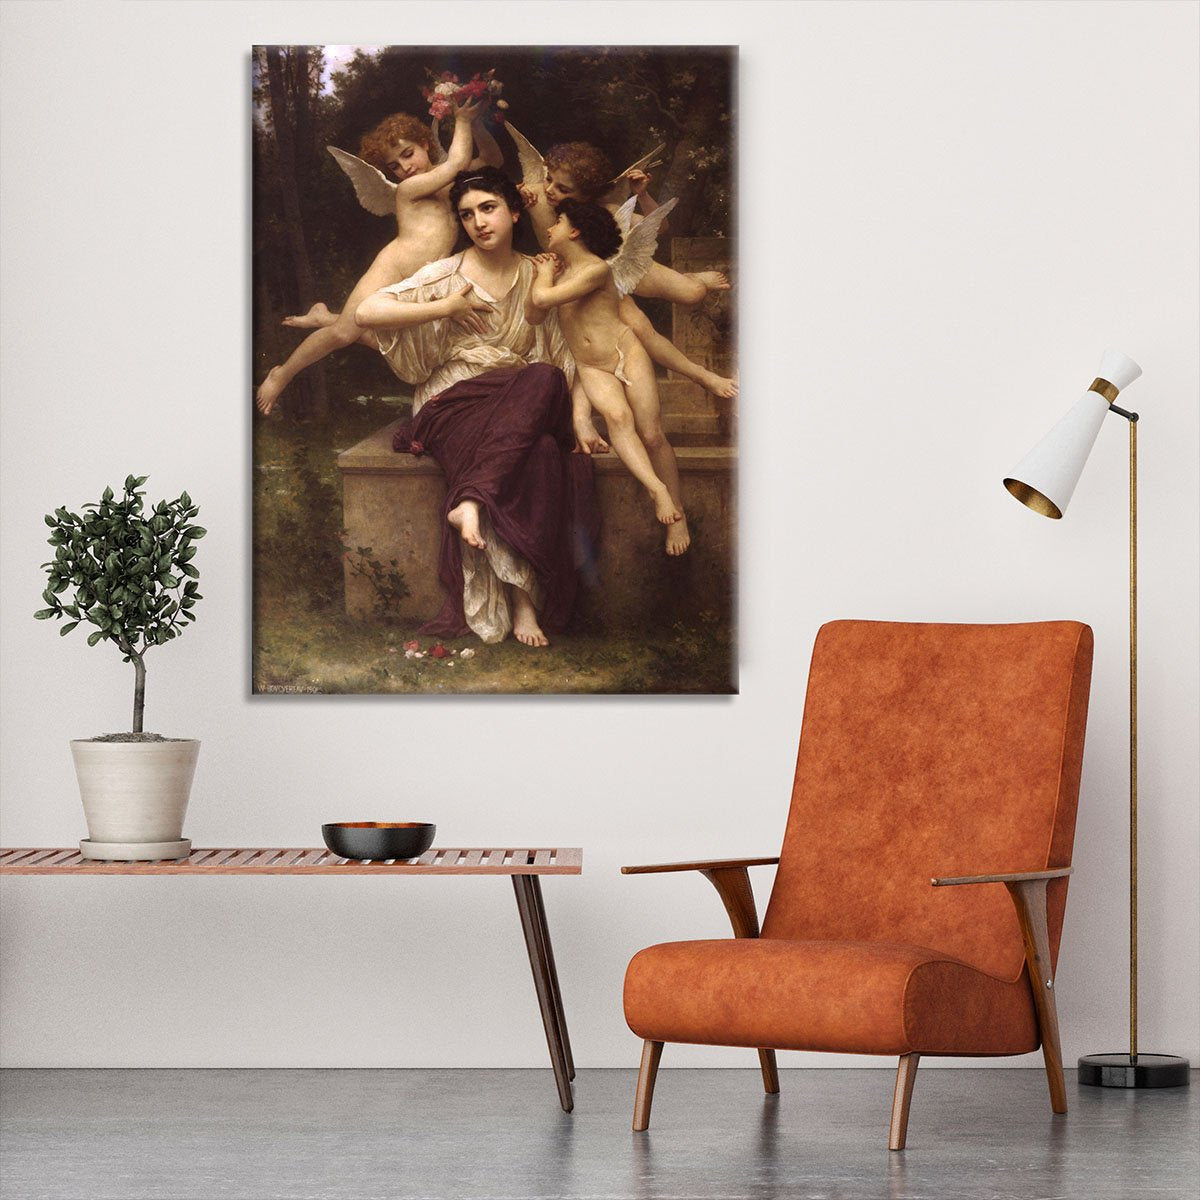 Ave de printemps By Bouguereau Canvas Print or Poster